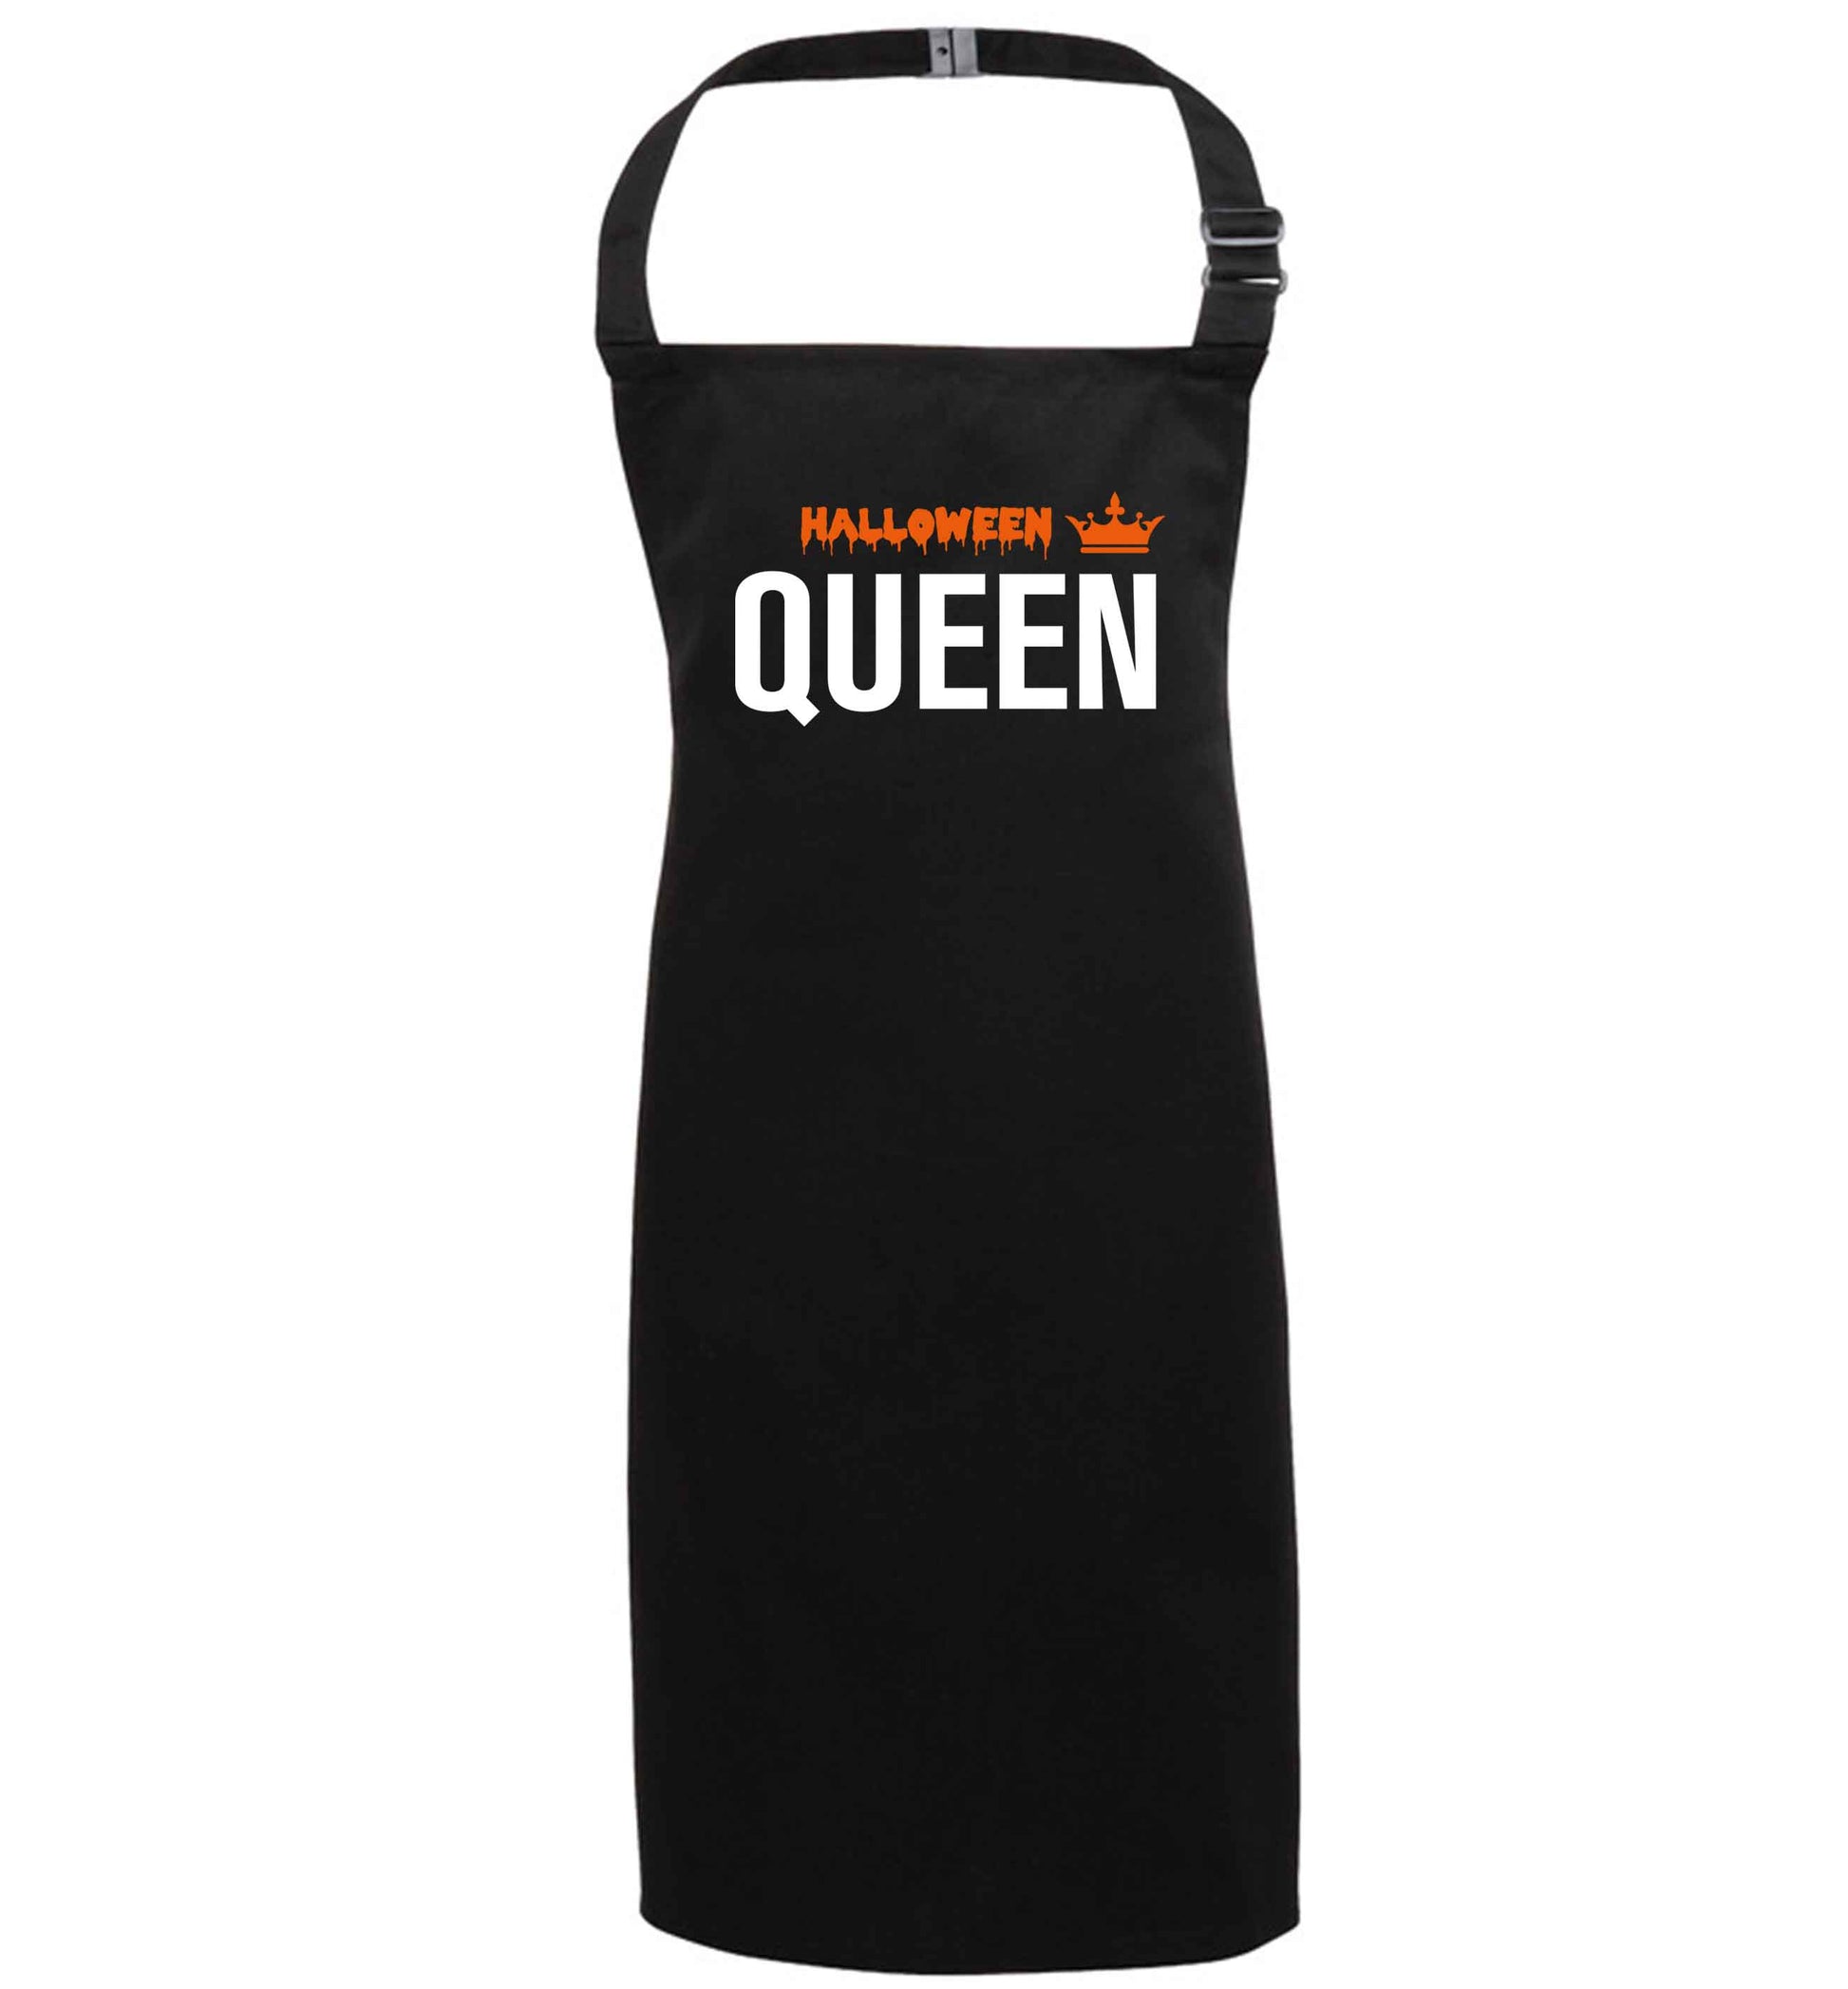 Halloween queen black apron 7-10 years